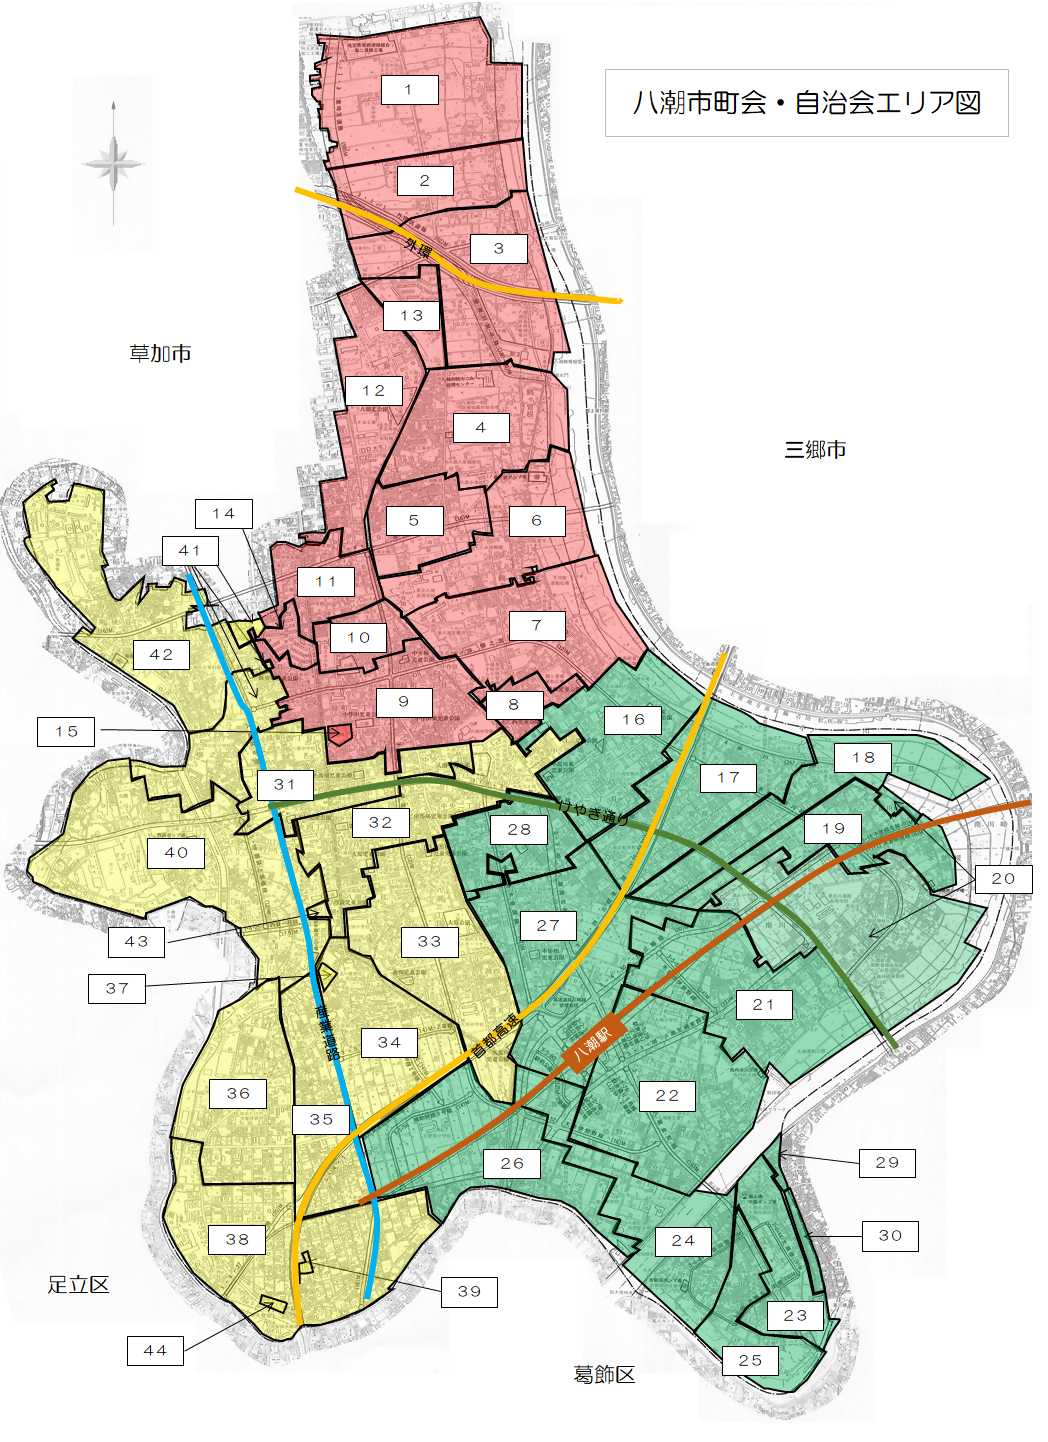 八潮市を町会、自治会の境界線で分けた地図。さらに八條地区、潮止地区、八幡地区で色分けされている。